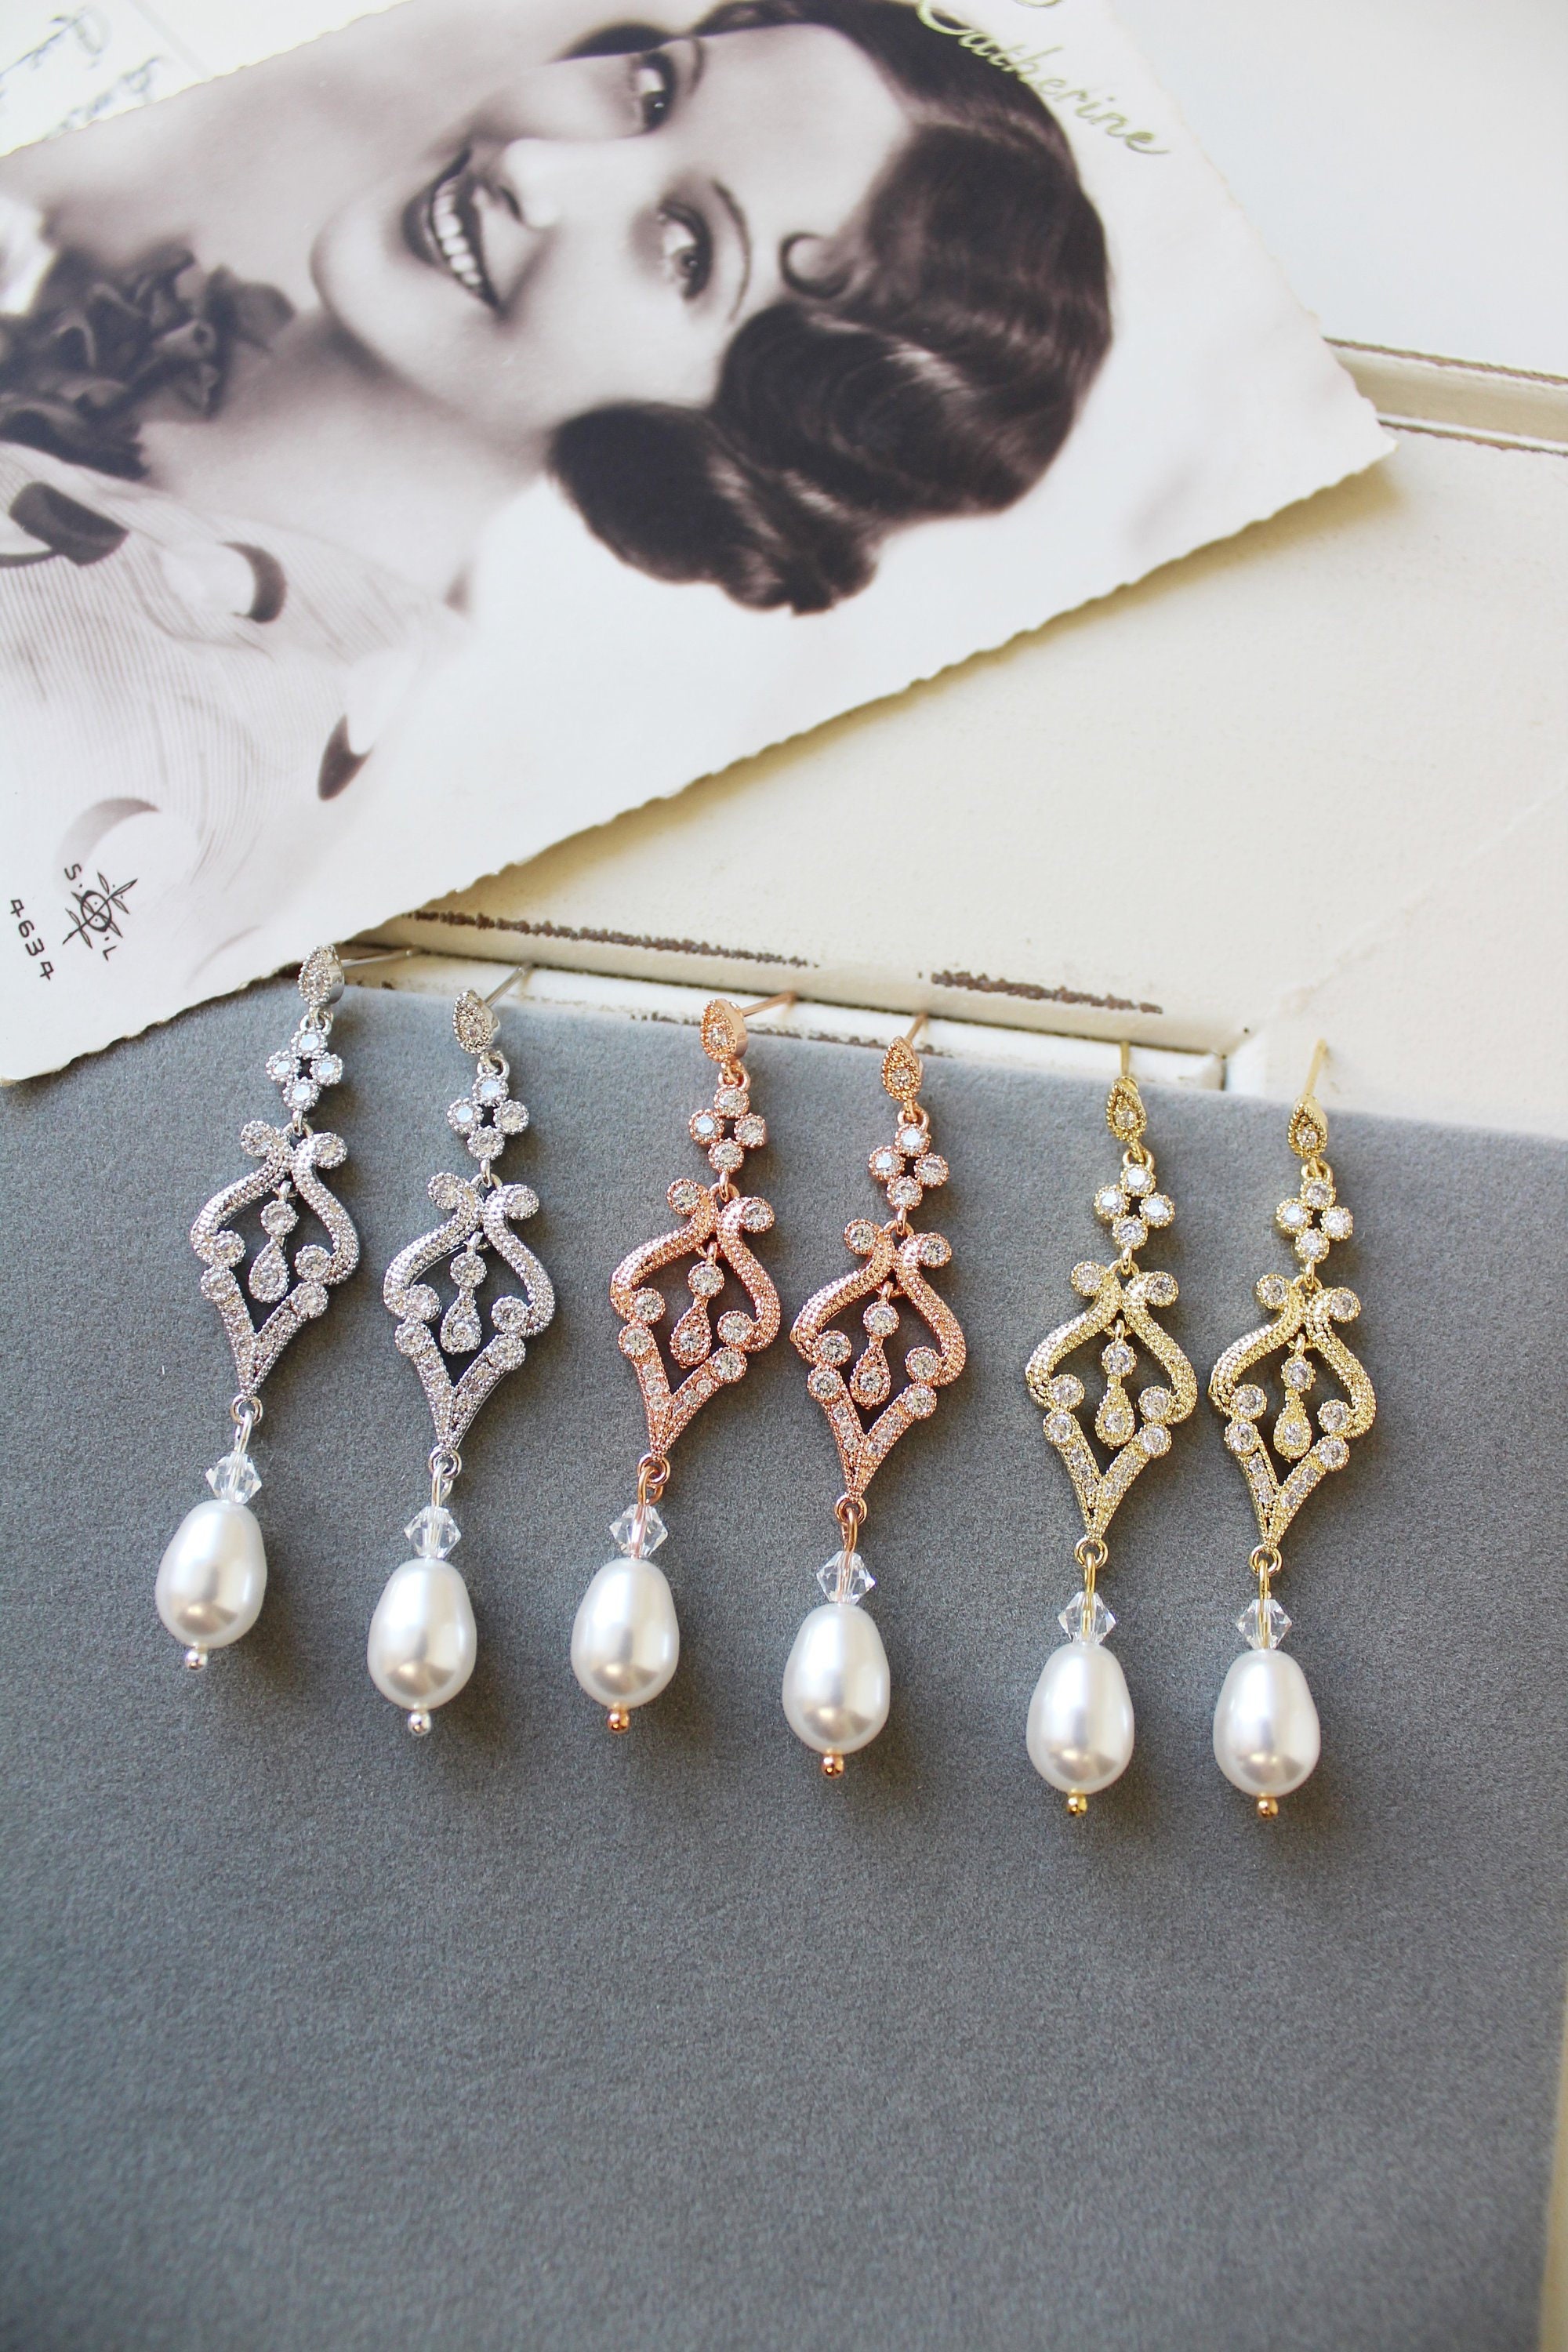 Art Deco Earrings Vintage Style Crystal Pearl Earrings | Etsy